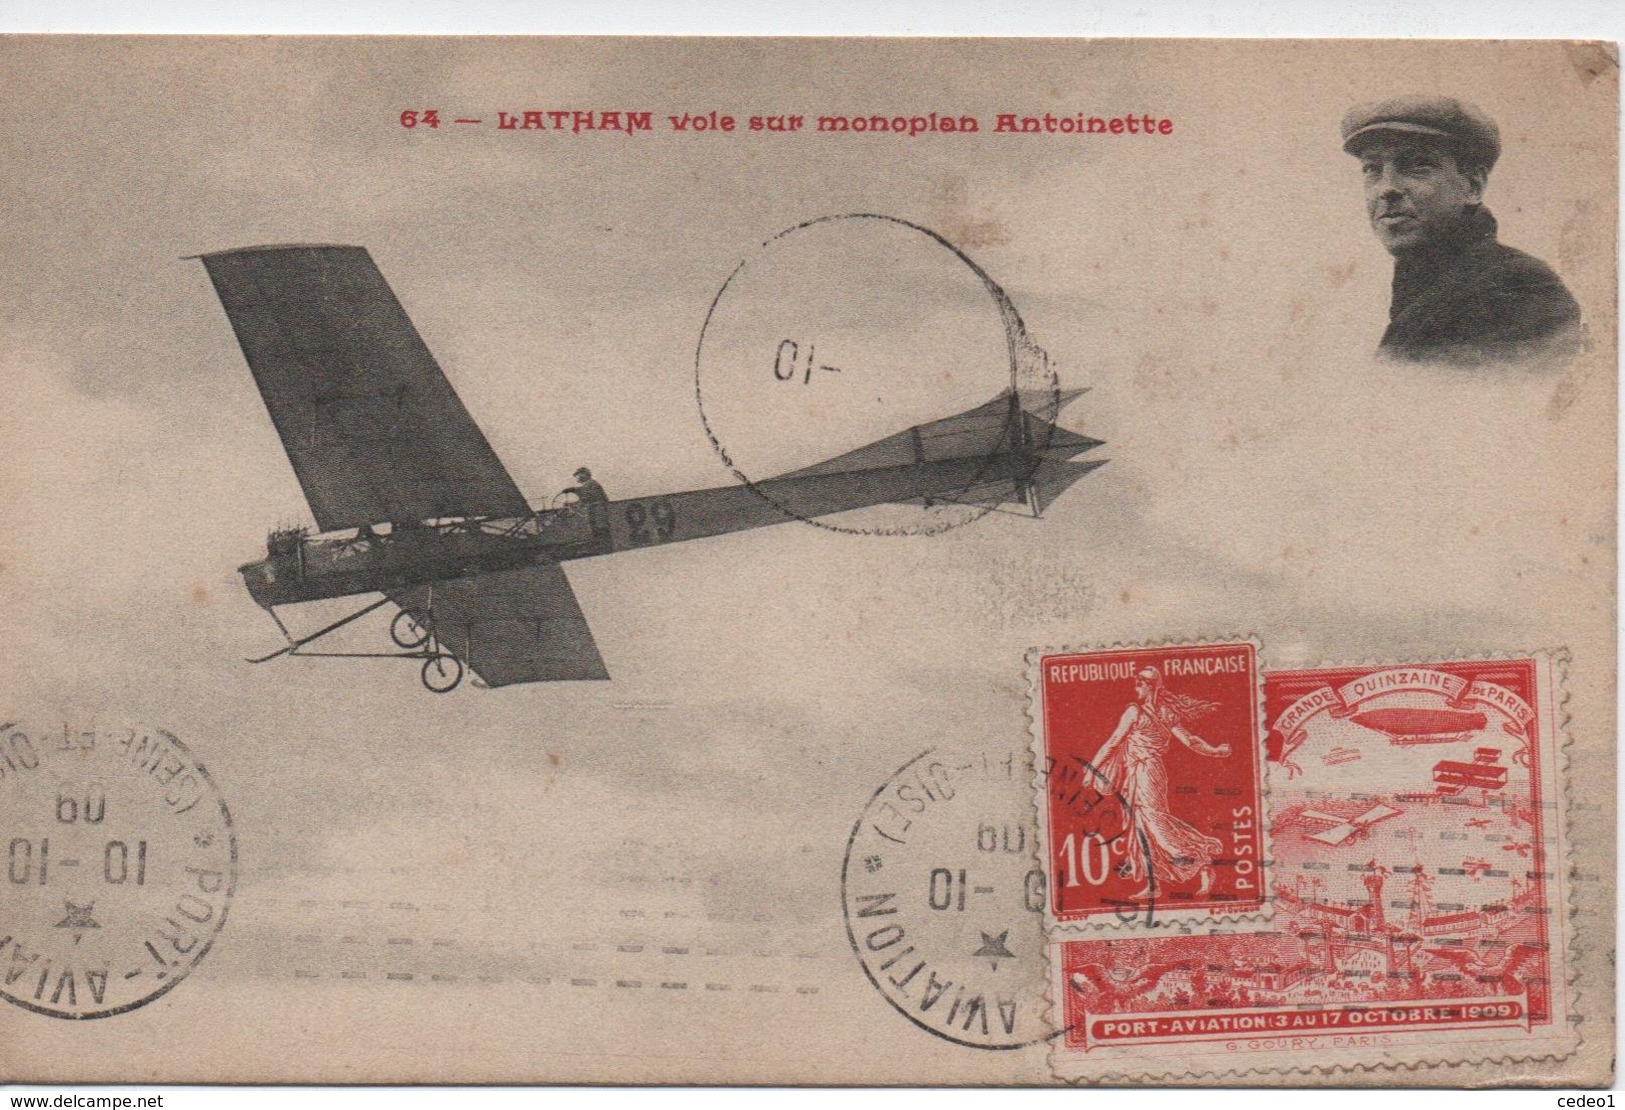 LATHAM  VOLE SUR MONOPLAN ANTOINETTE  AVEC VIGNETTE  PORT AVIATION 3 AU 17 OCTOBRE 1909 - Flieger